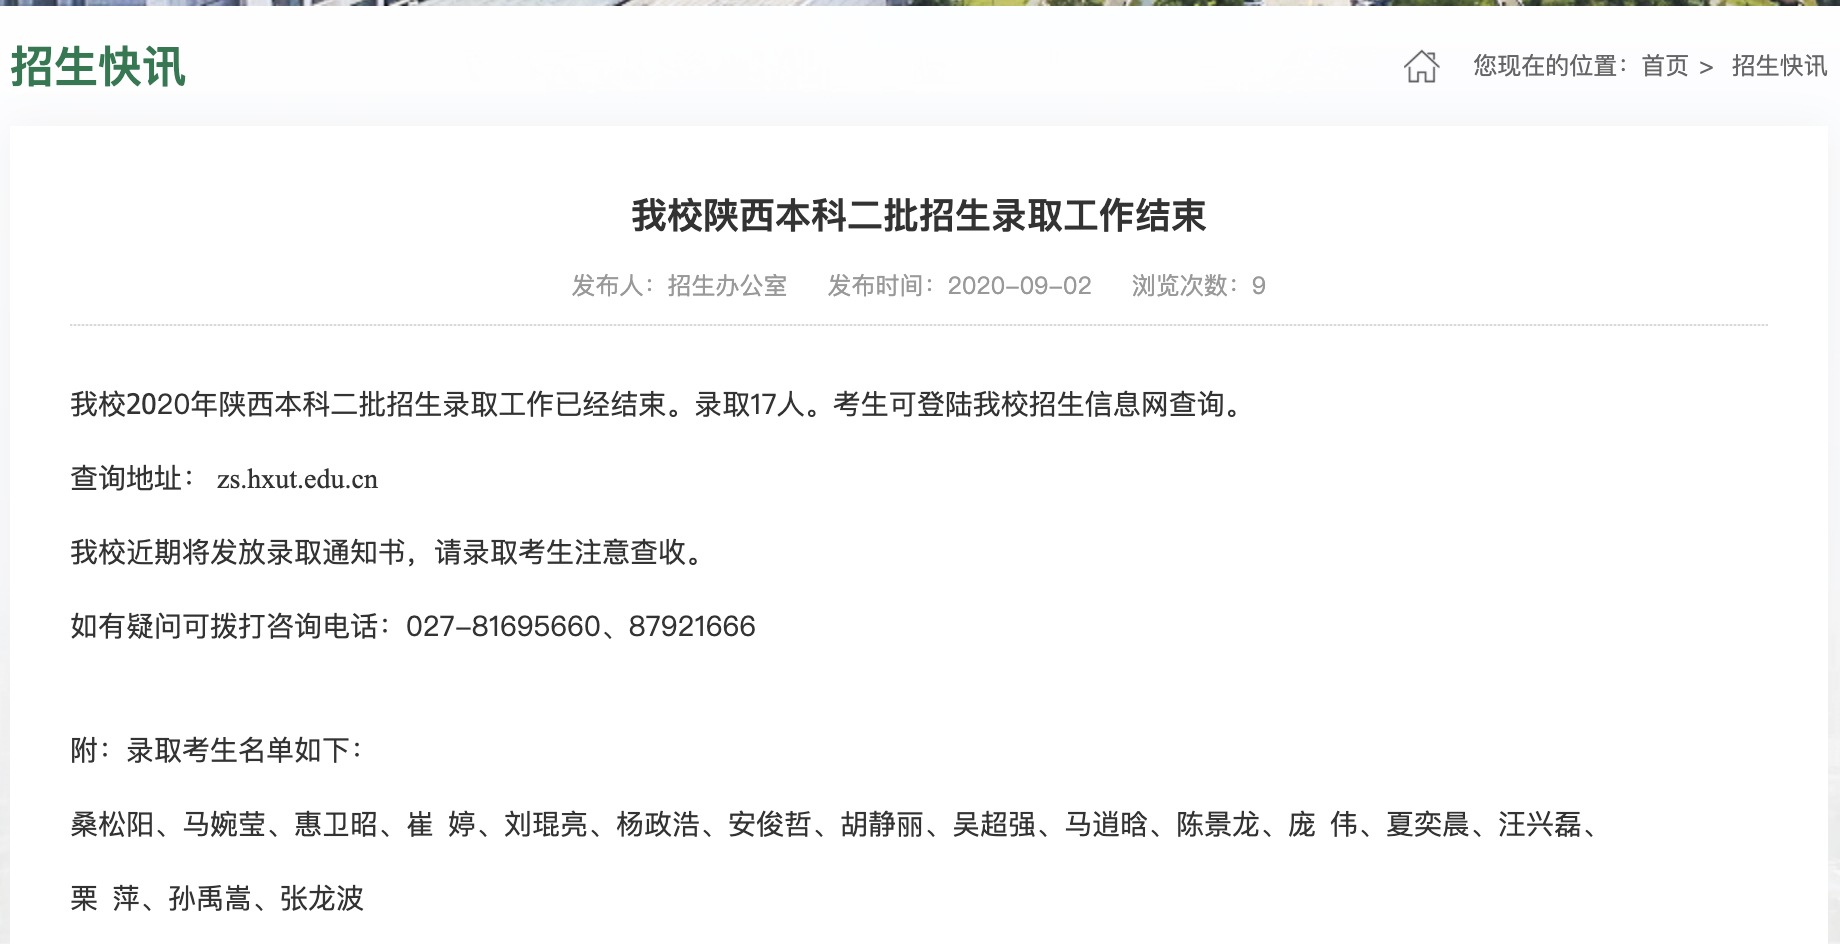 武汉华夏理工学院2020高考陕西本科二批招生录取名单